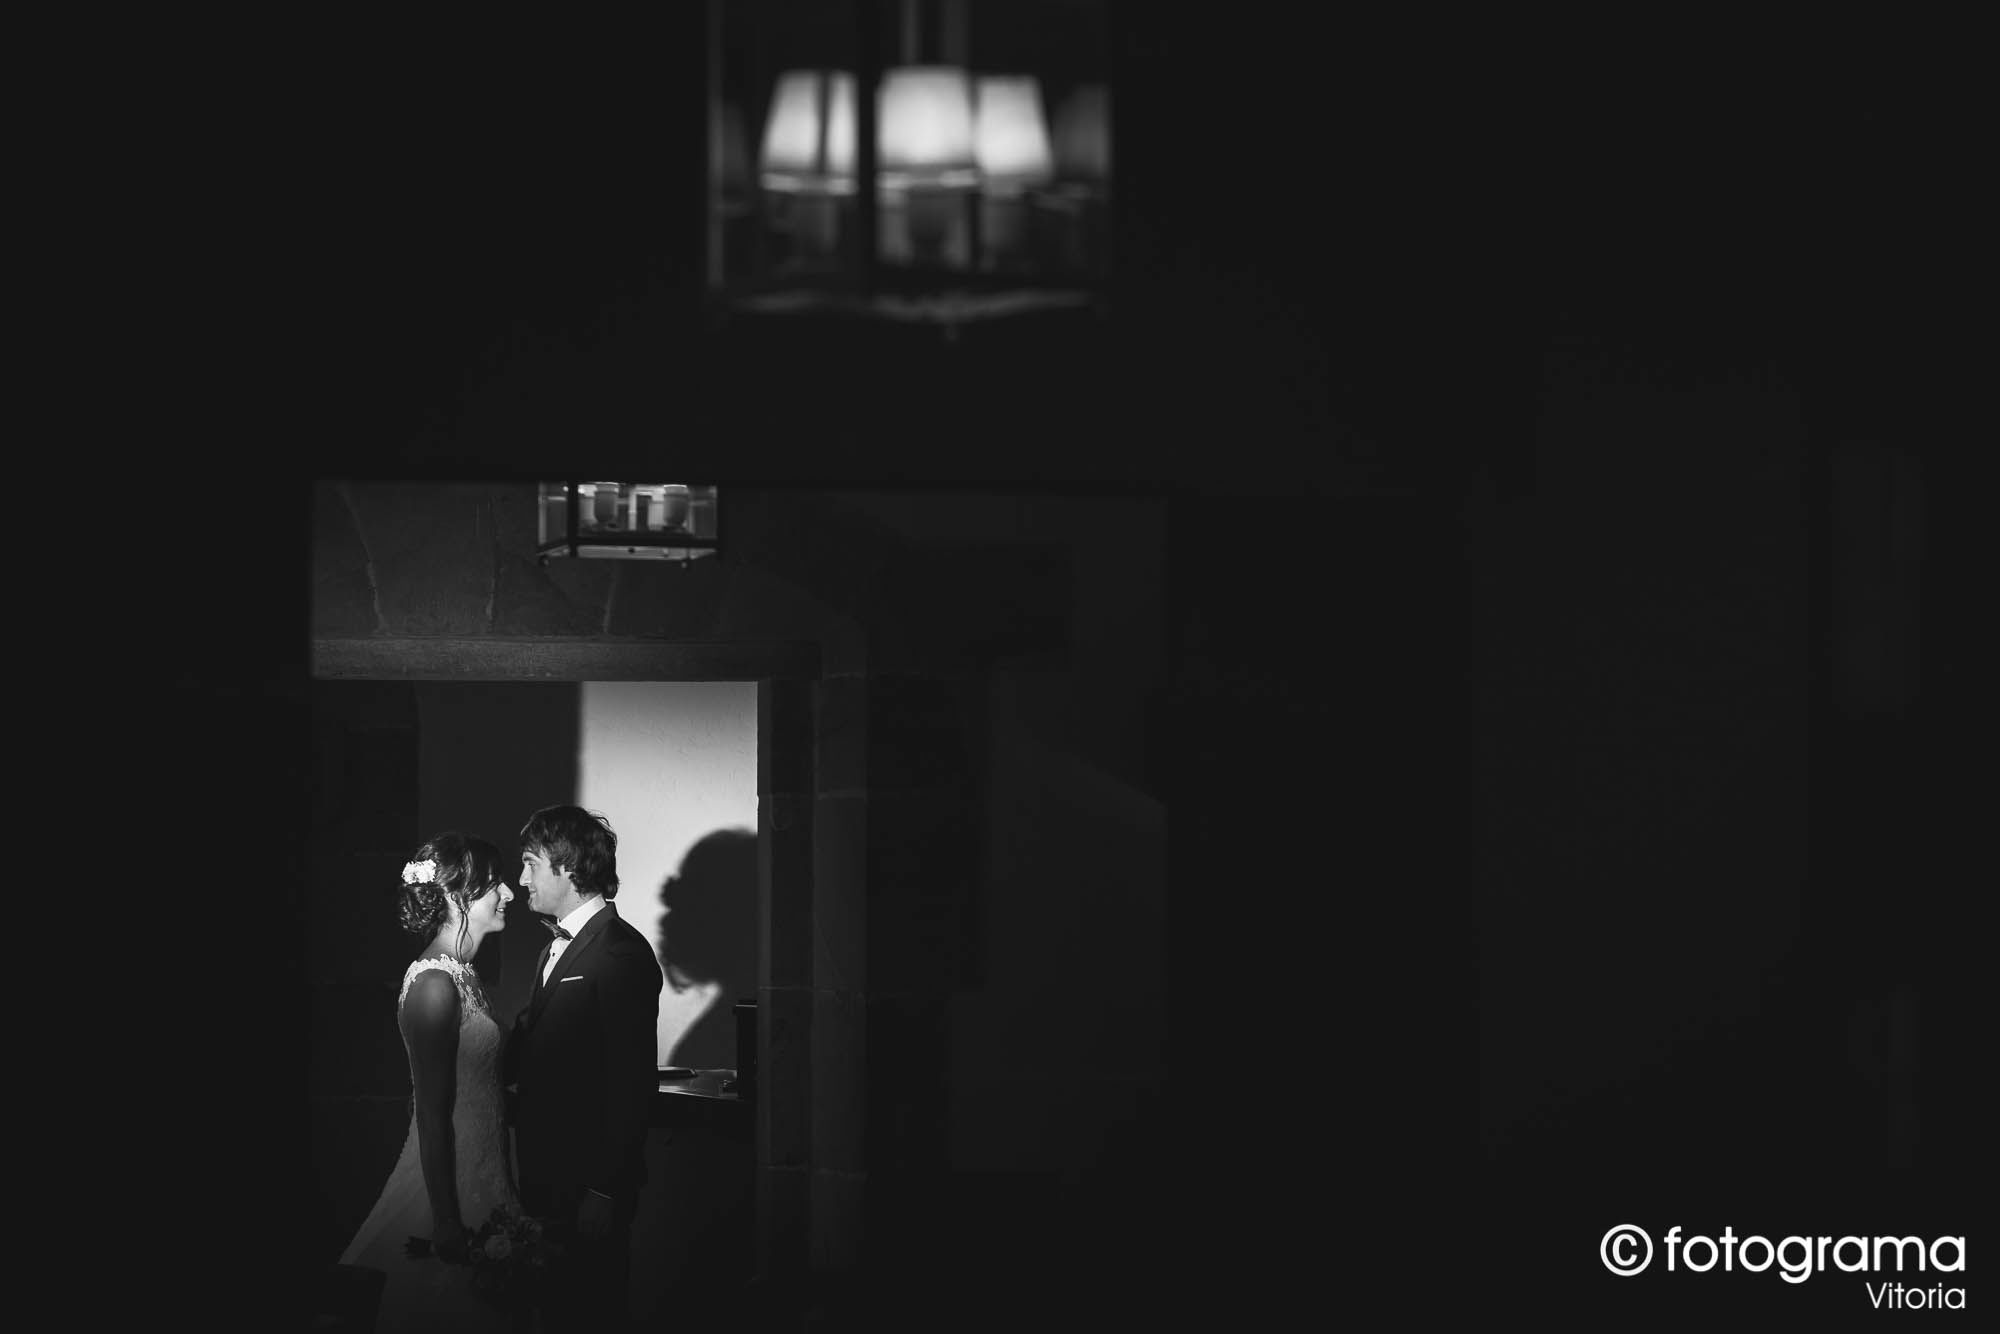 Fotograma Vitoria - 002-foto-de-boda-novios-mirandose-en-una-de-las-estancias-del-parador-de-argomaniz-fotogramavitoria-fotografo.jpg